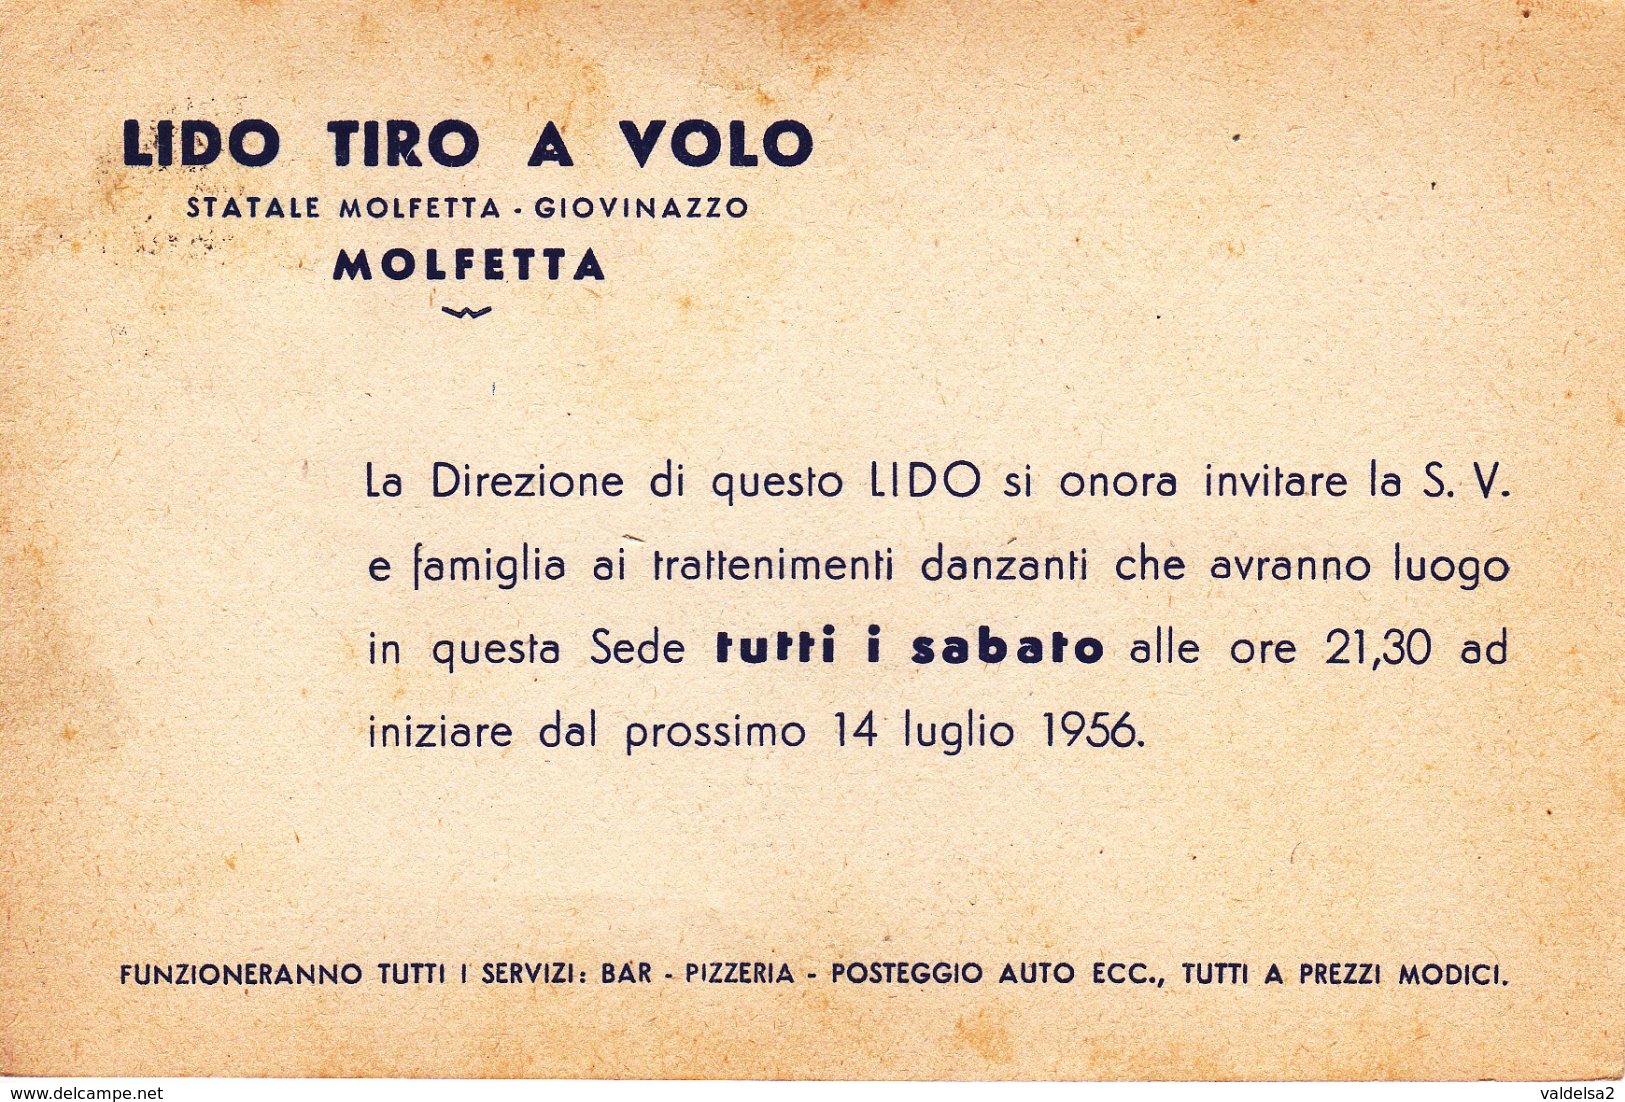 MOLFETTA - BARI - LIDO TIRO A VOLO - SERATE DANZANTI - STATALE MOLFETTA / GIOVINAZZO - 1956 - Molfetta